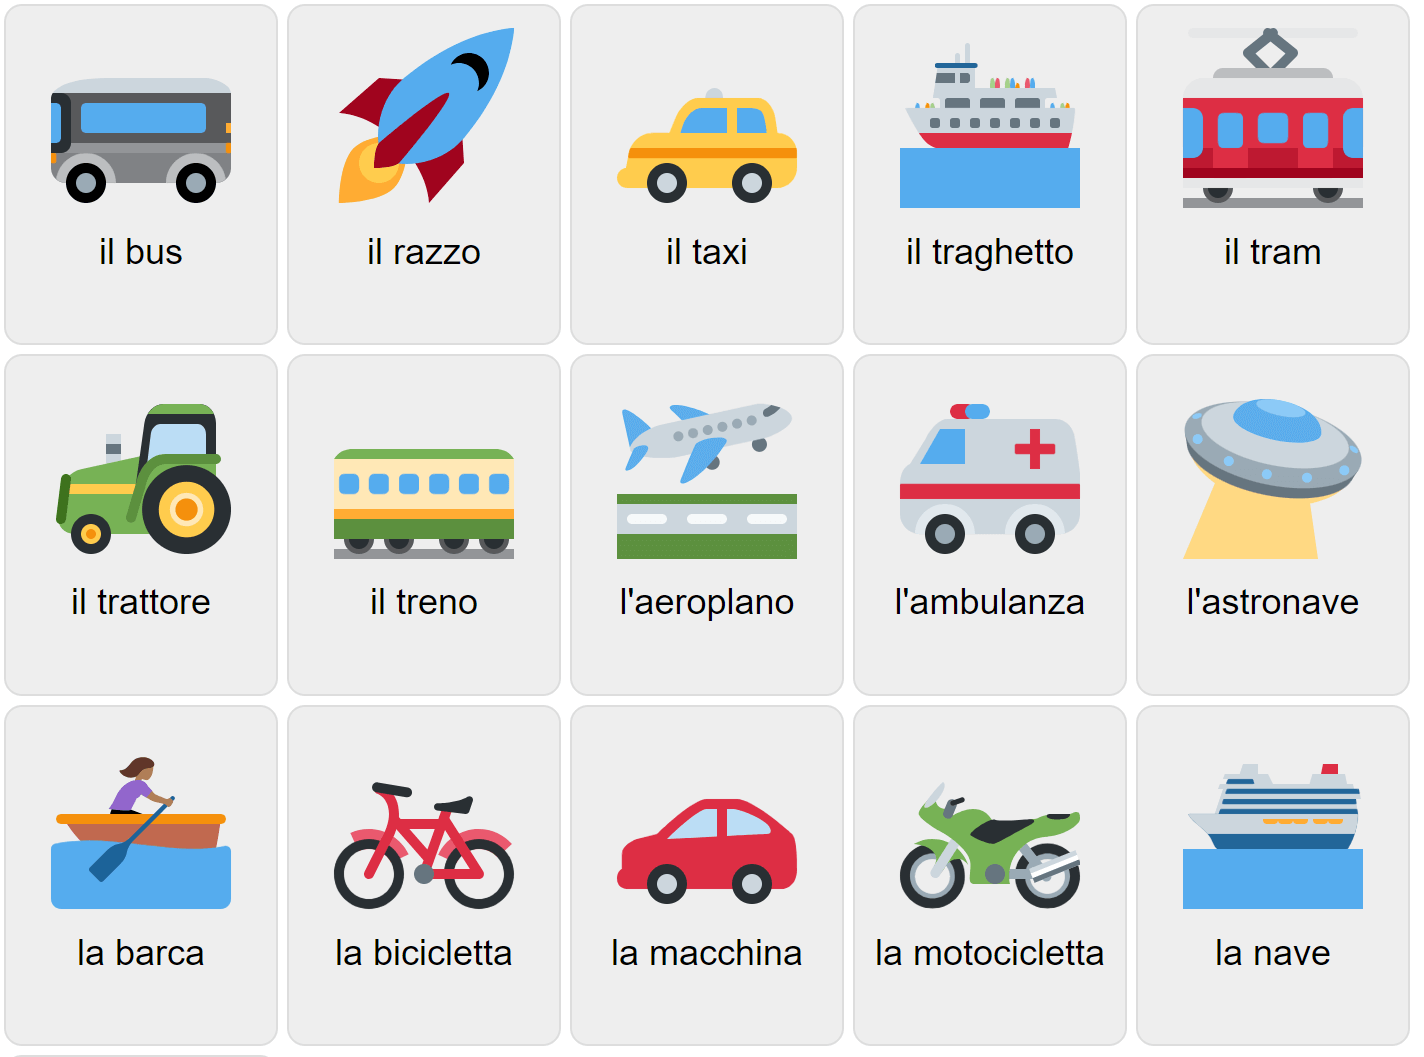 Transport in Italian